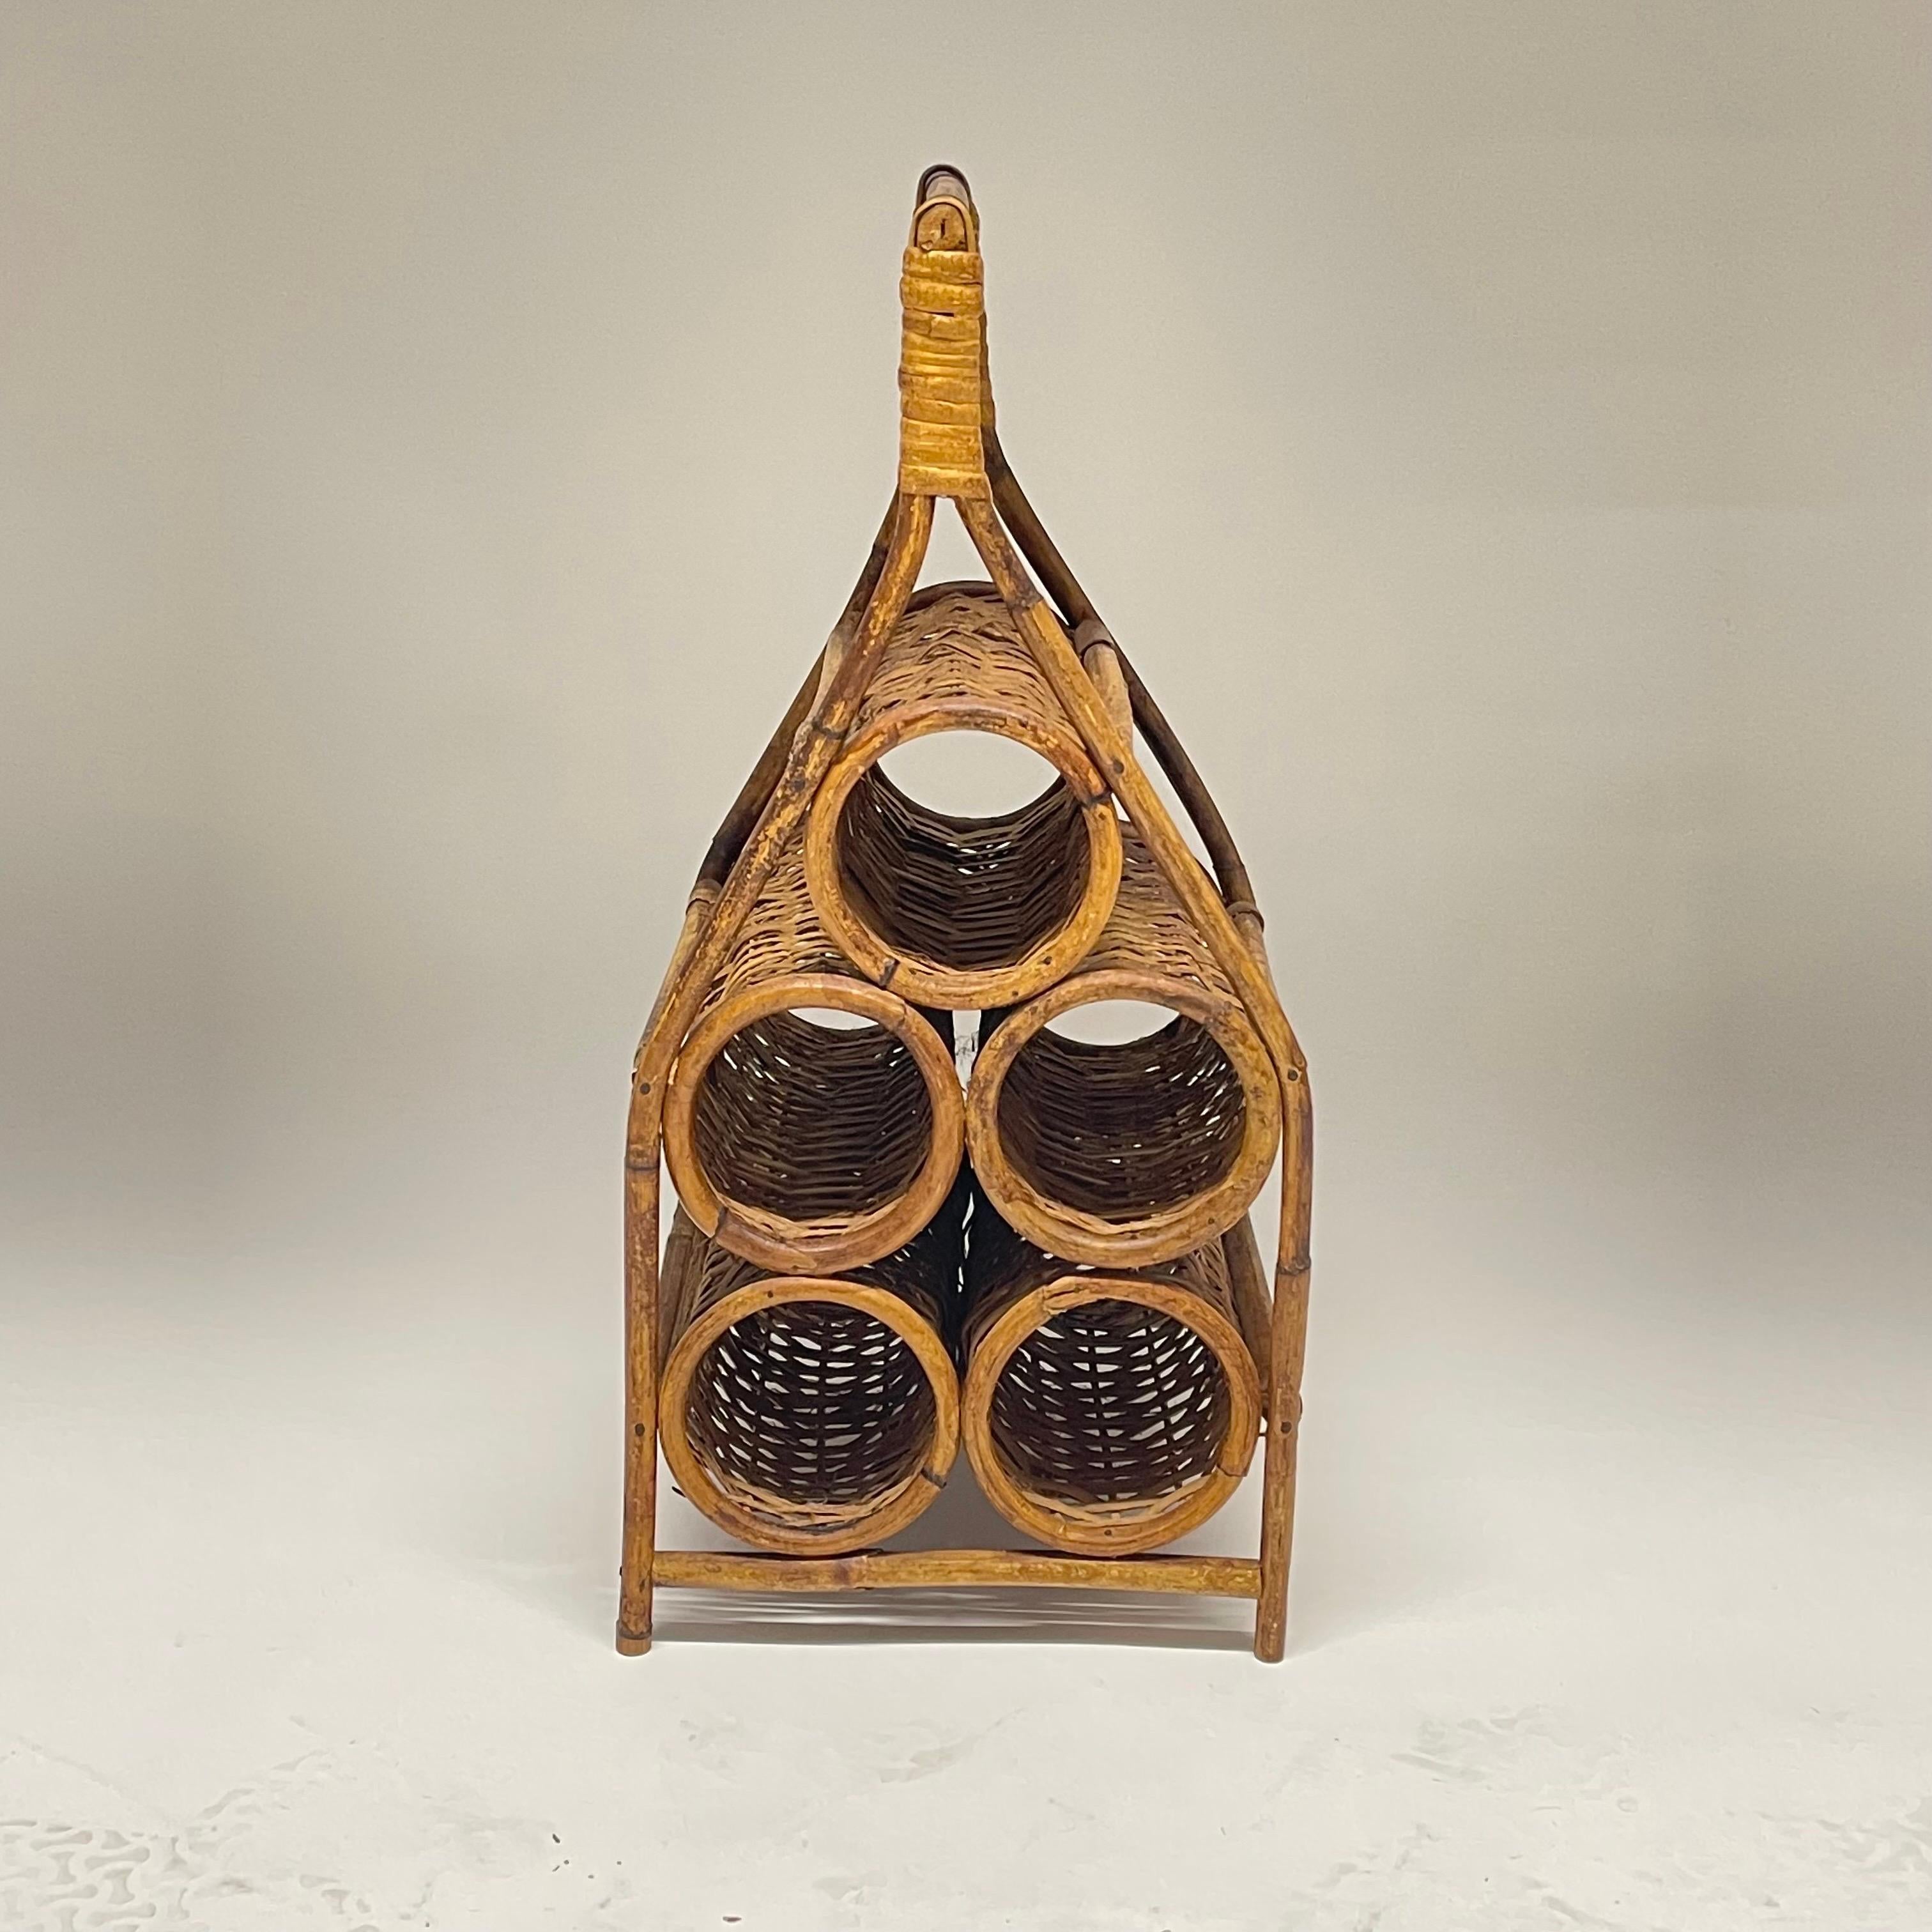 Skulpturales französisches Weinregal oder Weinhalter aus der Mitte des Jahrhunderts aus handgeflochtenem Weidengeflecht und handgebogenem Rattan und Bambus mit einer Kapazität für bis zu 5 Weinflaschen und einem Griff für den Transport, falls